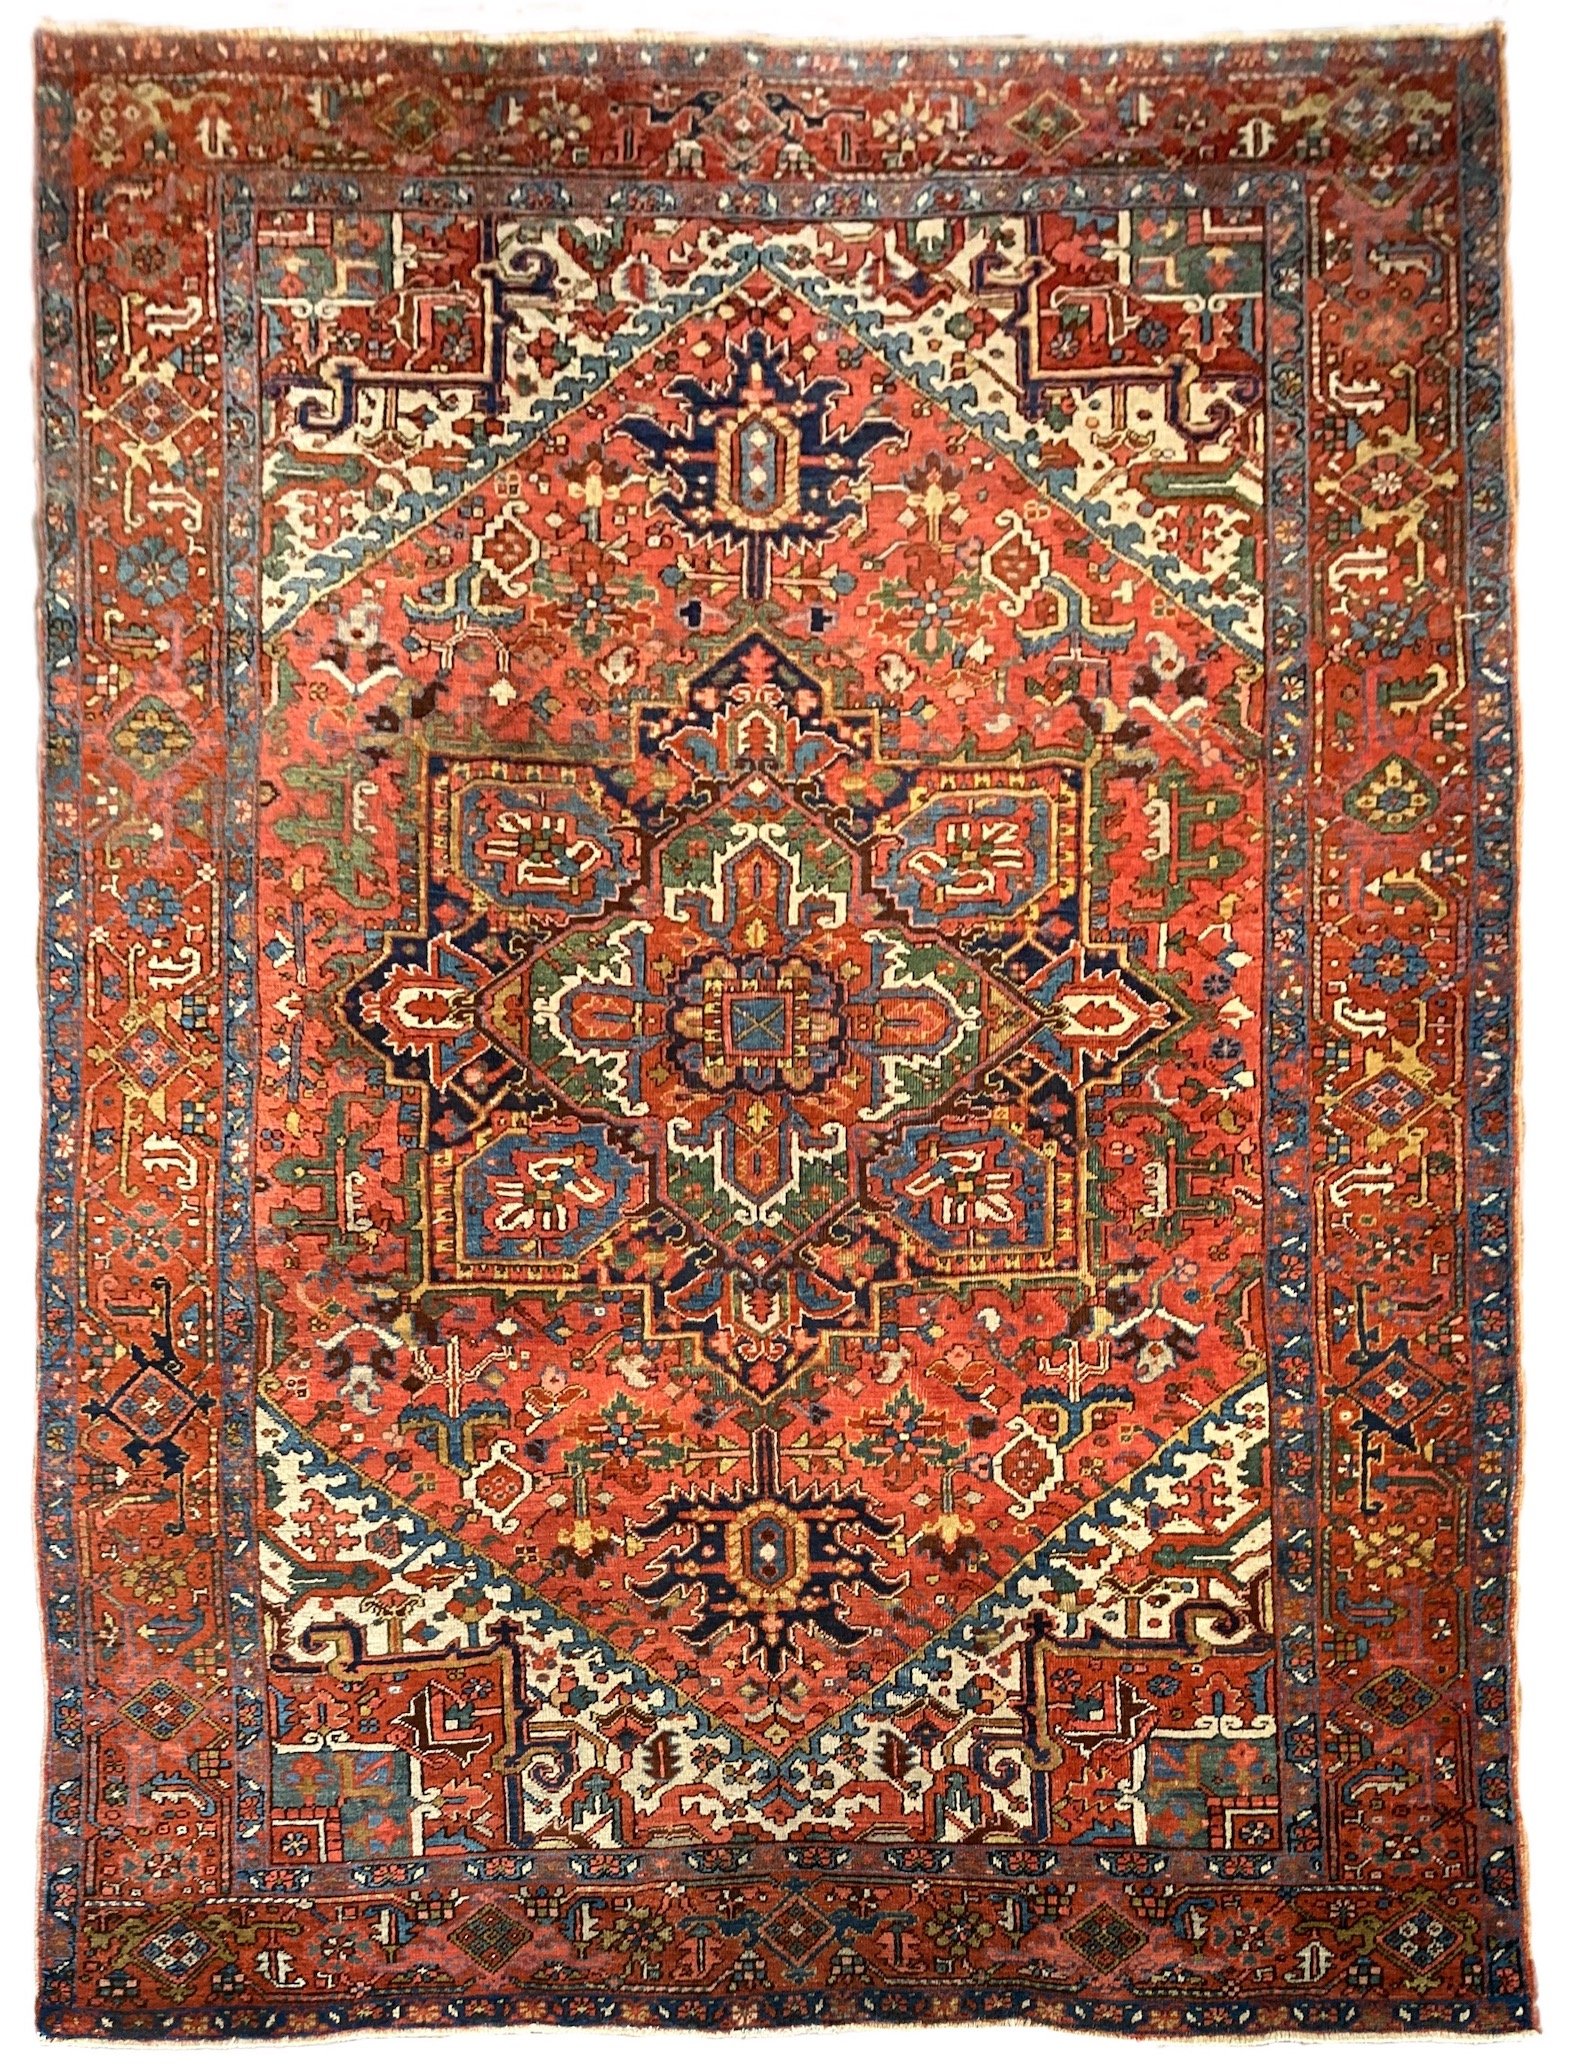 Antique Heriz Carpet 3.41m x 2.42m